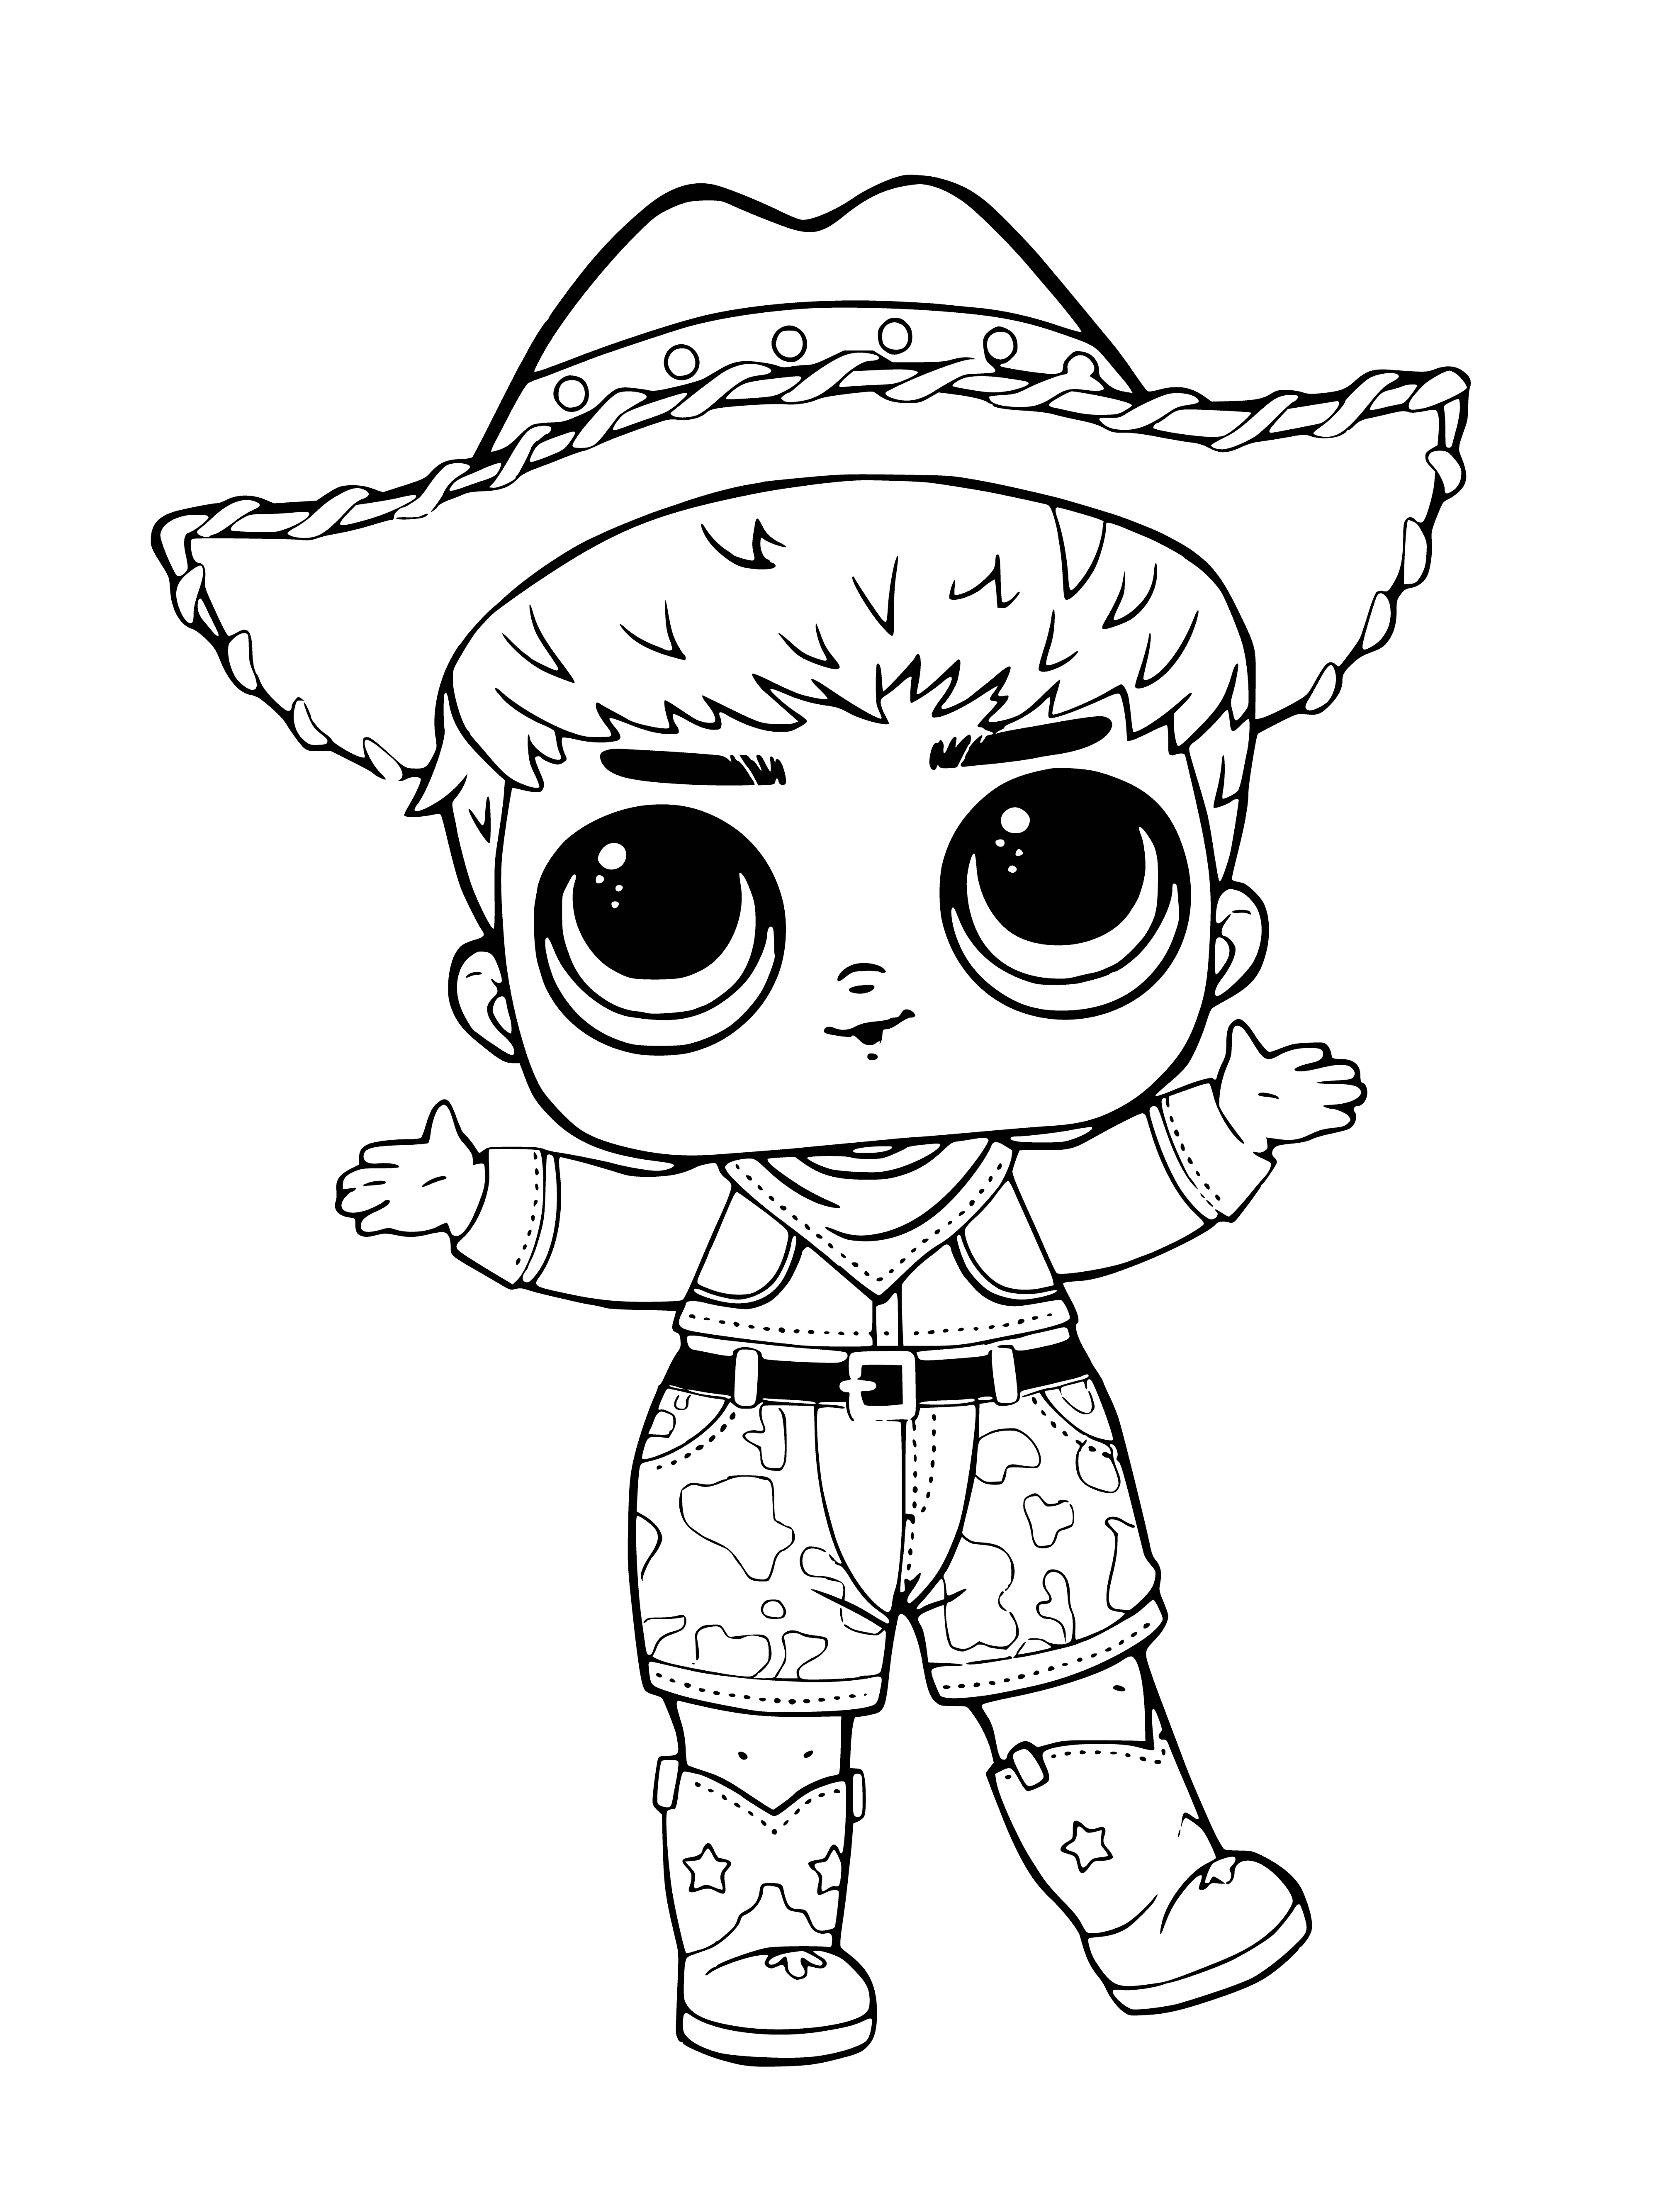 LOL Do-Si-Dude (Cowboy Do-re-mi) coloring page